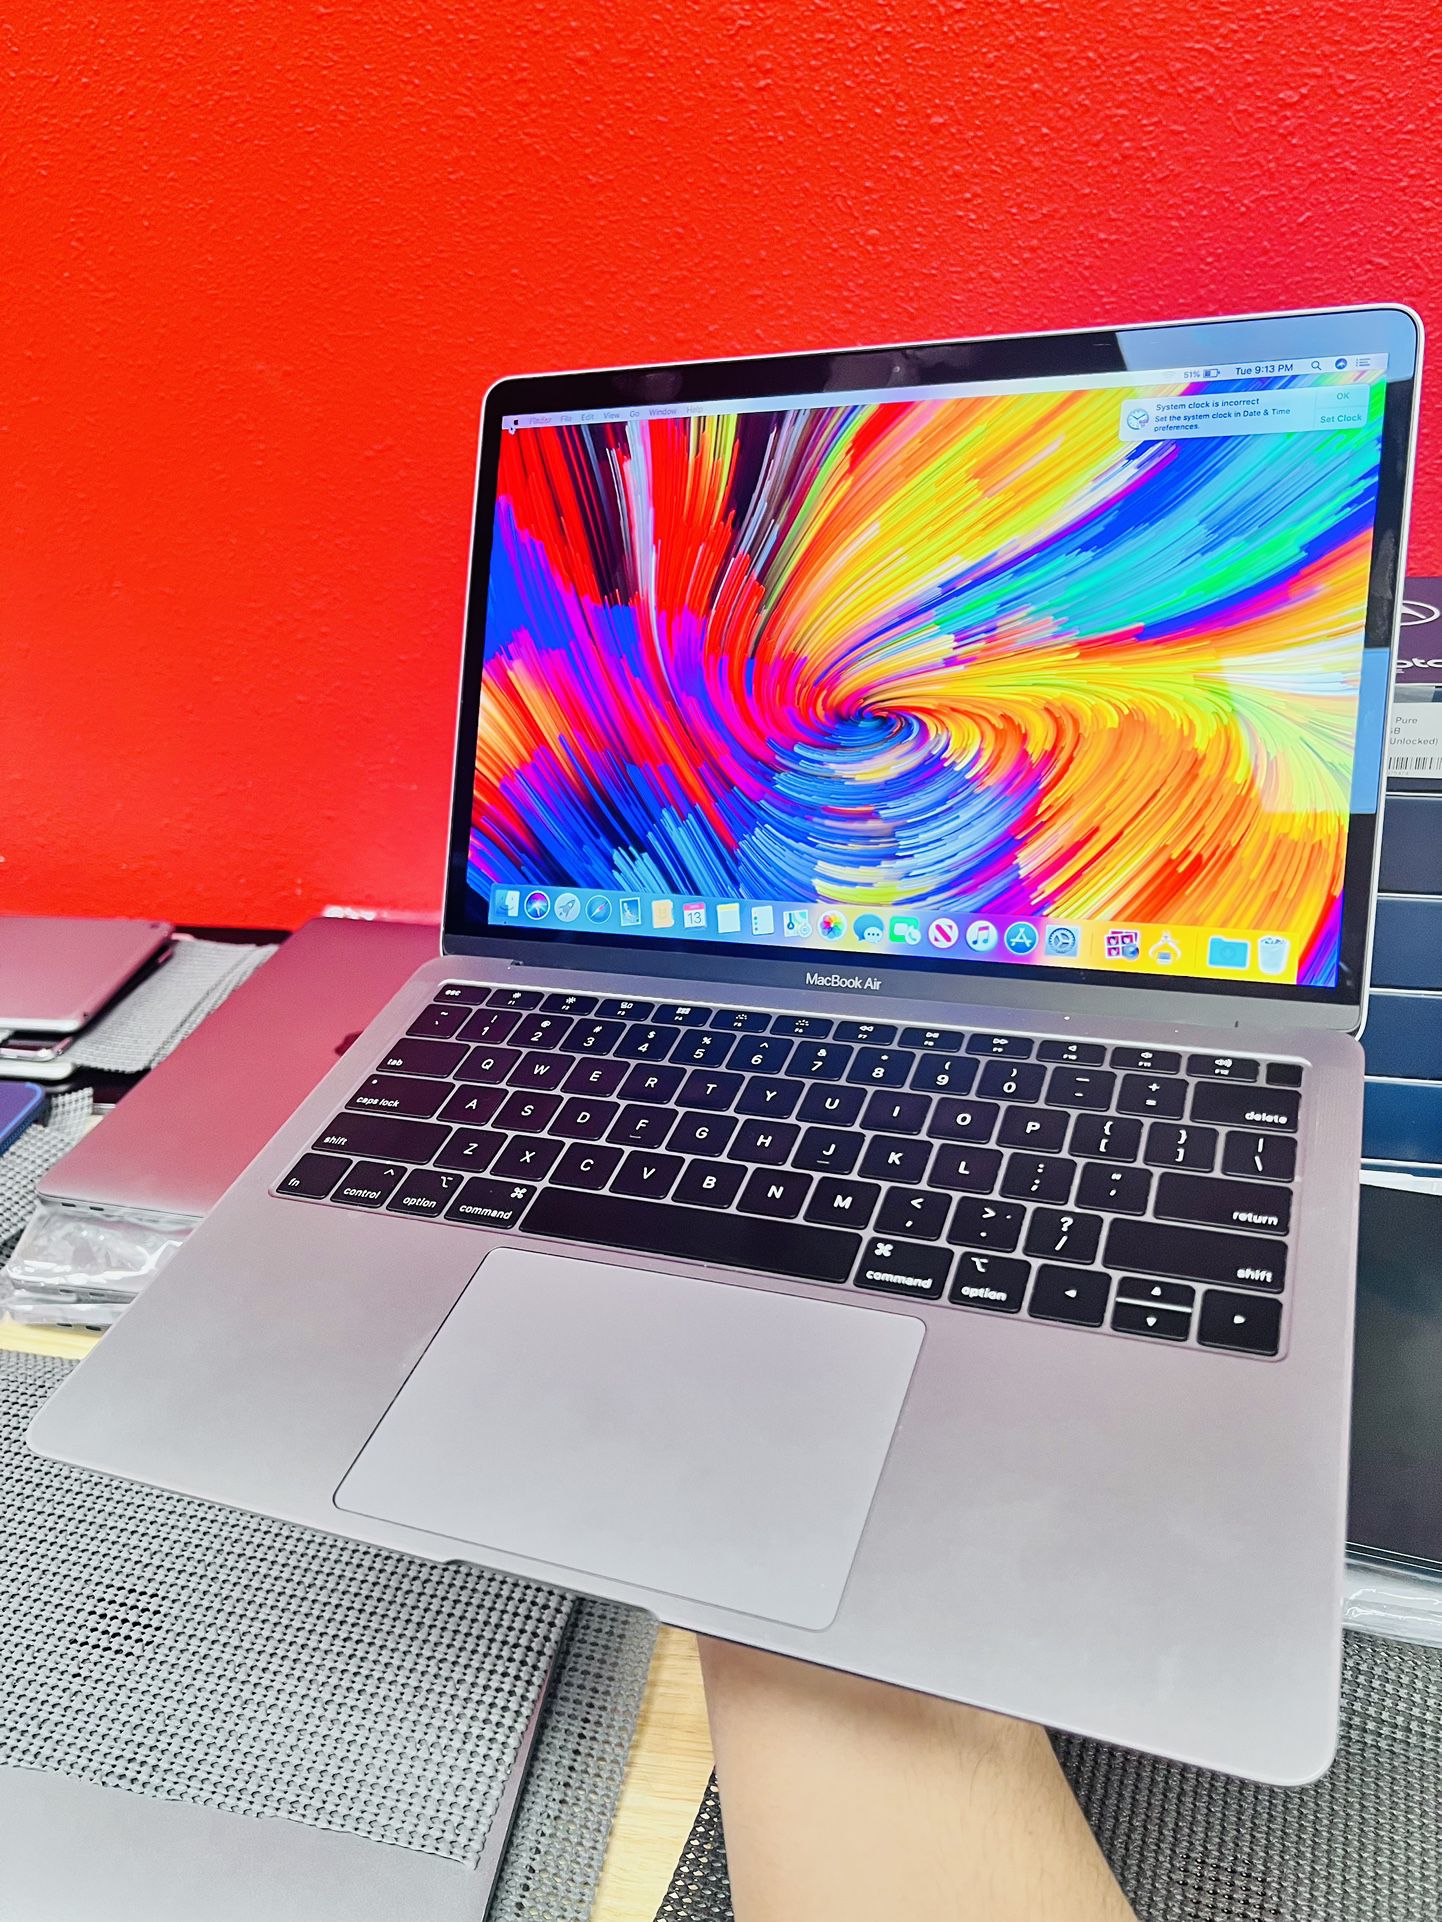 MacBook Air 13in. 2018 Core i5 8gb Ram 128gb $50 Down